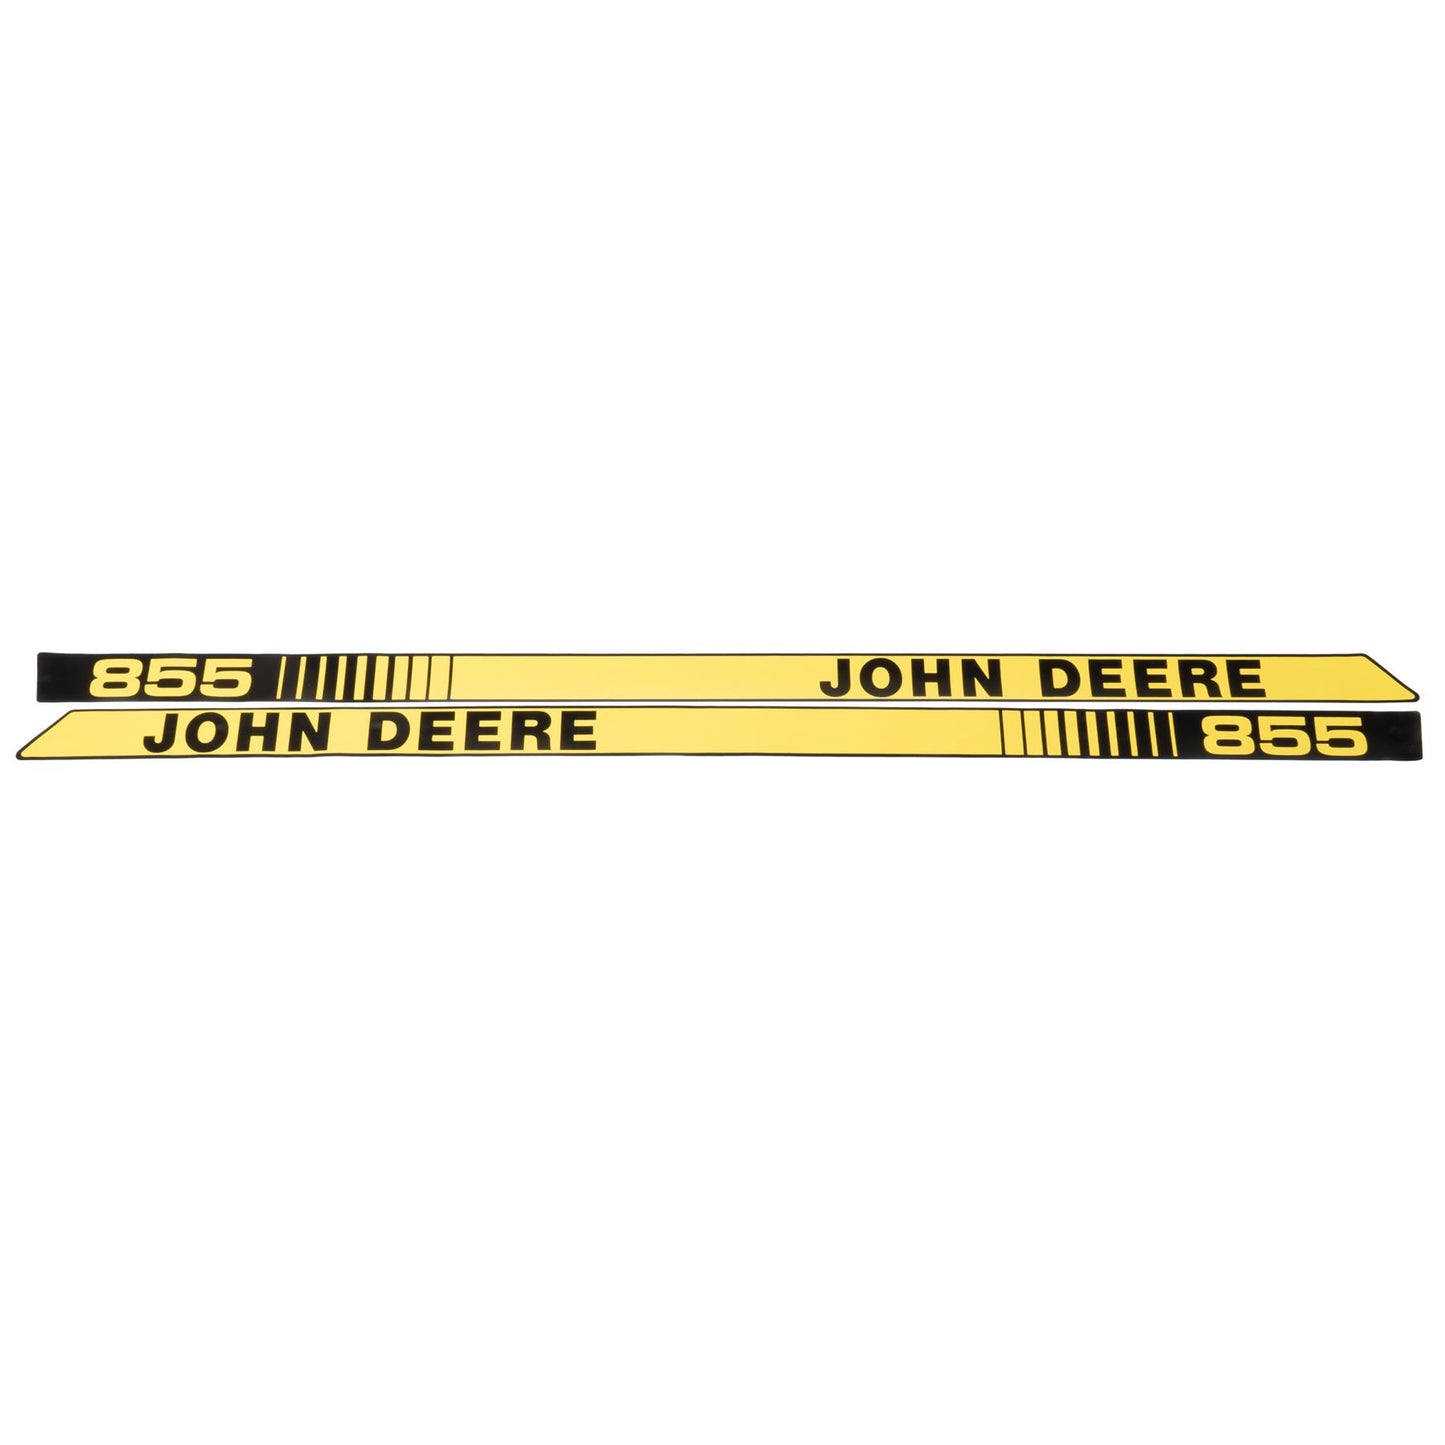 John Deere Decal - 855 - Both Sides - M93662 M93663